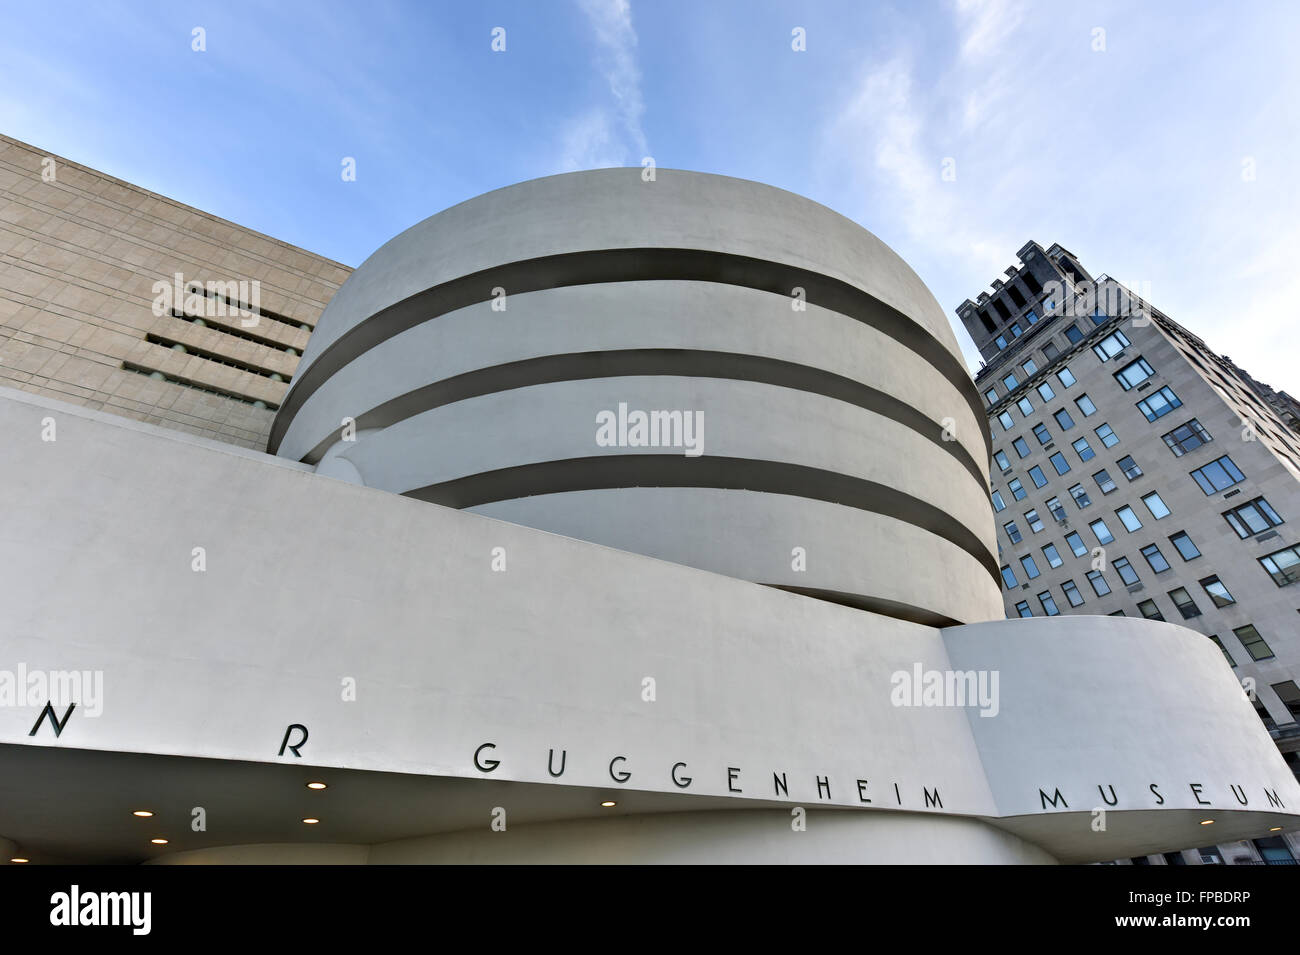 La Ciudad de Nueva York - 31 de enero de 2016: La famosa Solomon R. Guggenheim Museum de arte moderno y contemporáneo en la Ciudad de Nueva York, EE.UU. Foto de stock